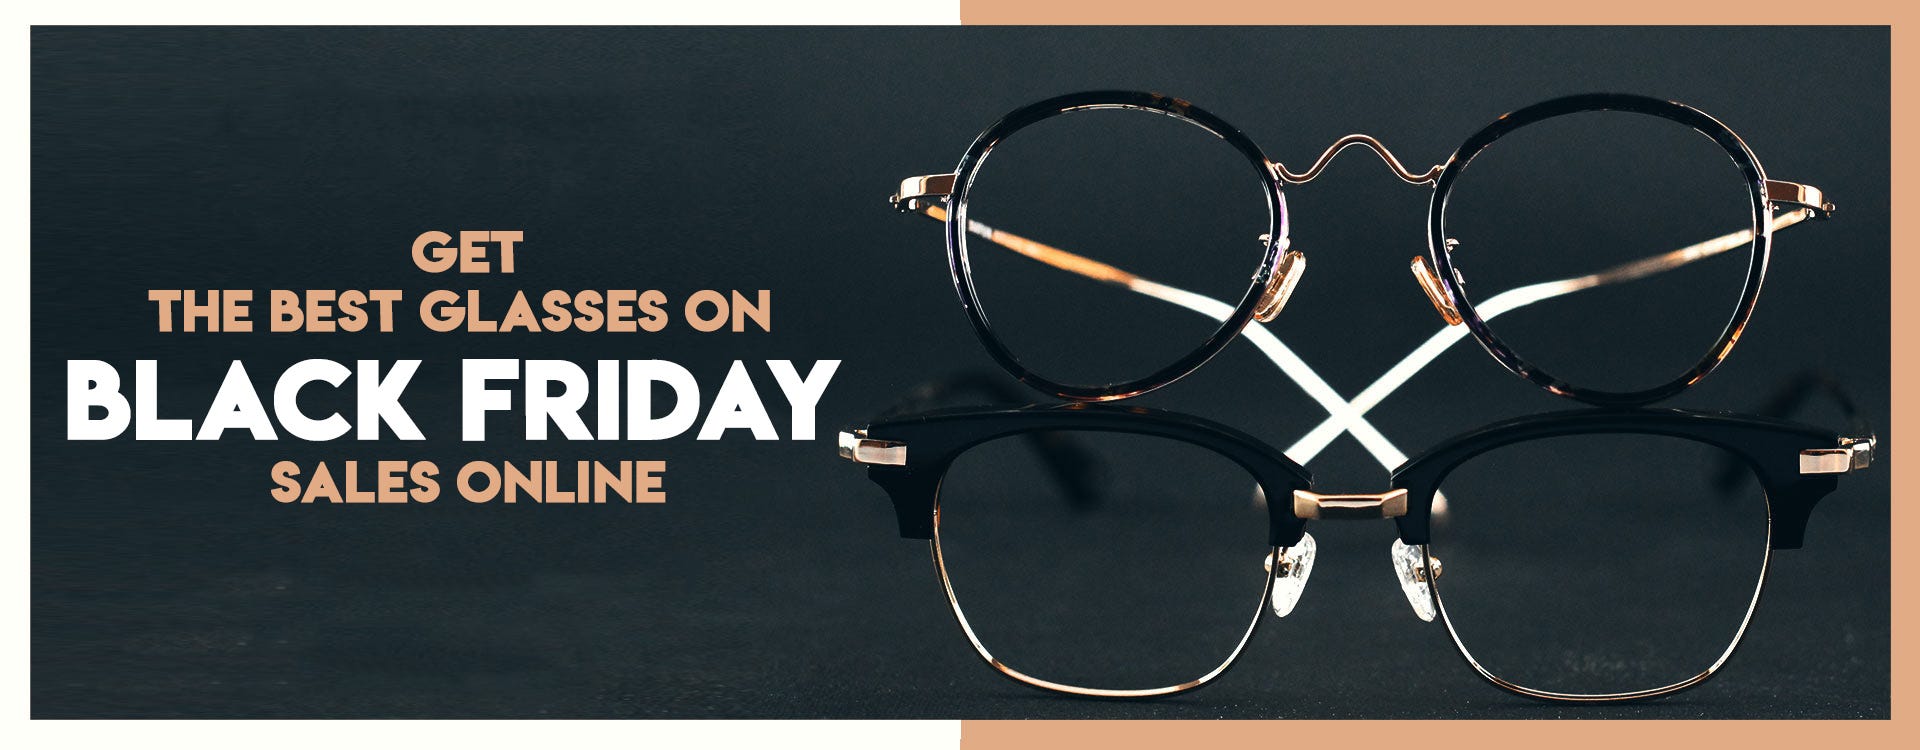 Get The Best Glasses on Black Friday Sale Online